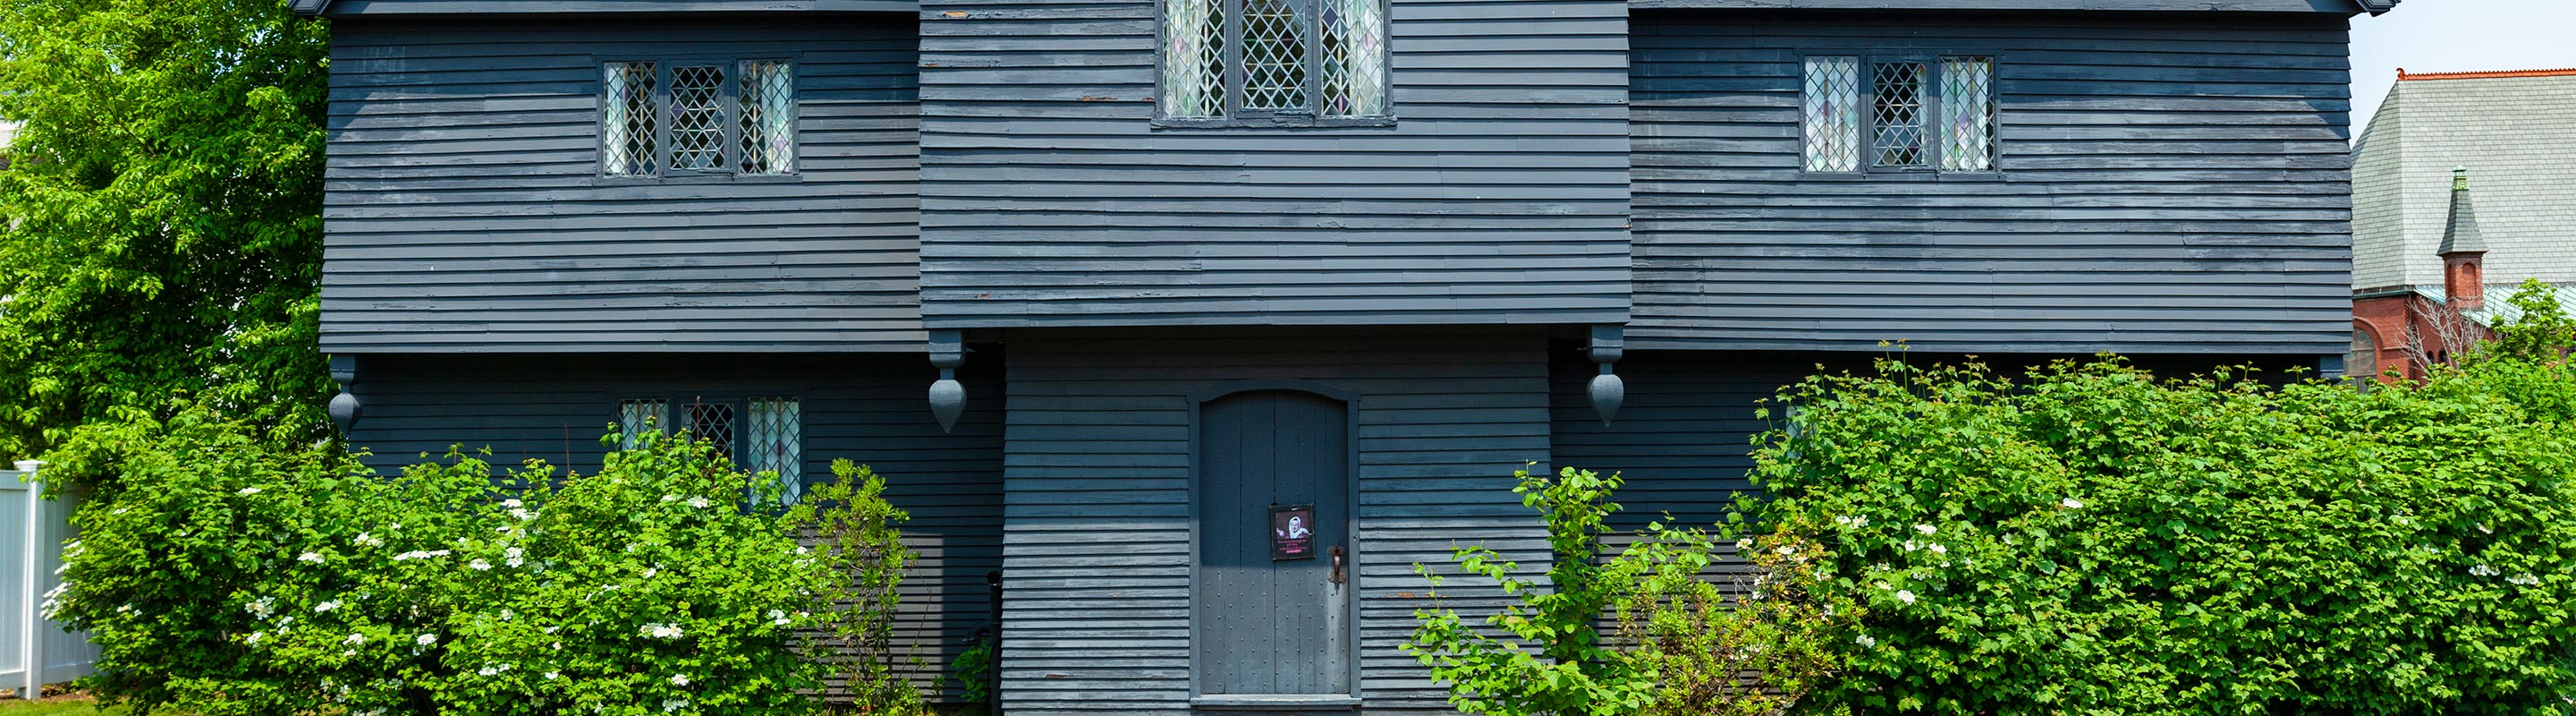 La Casa de Brujas de Salem | La Embrujada Casa de Brujas